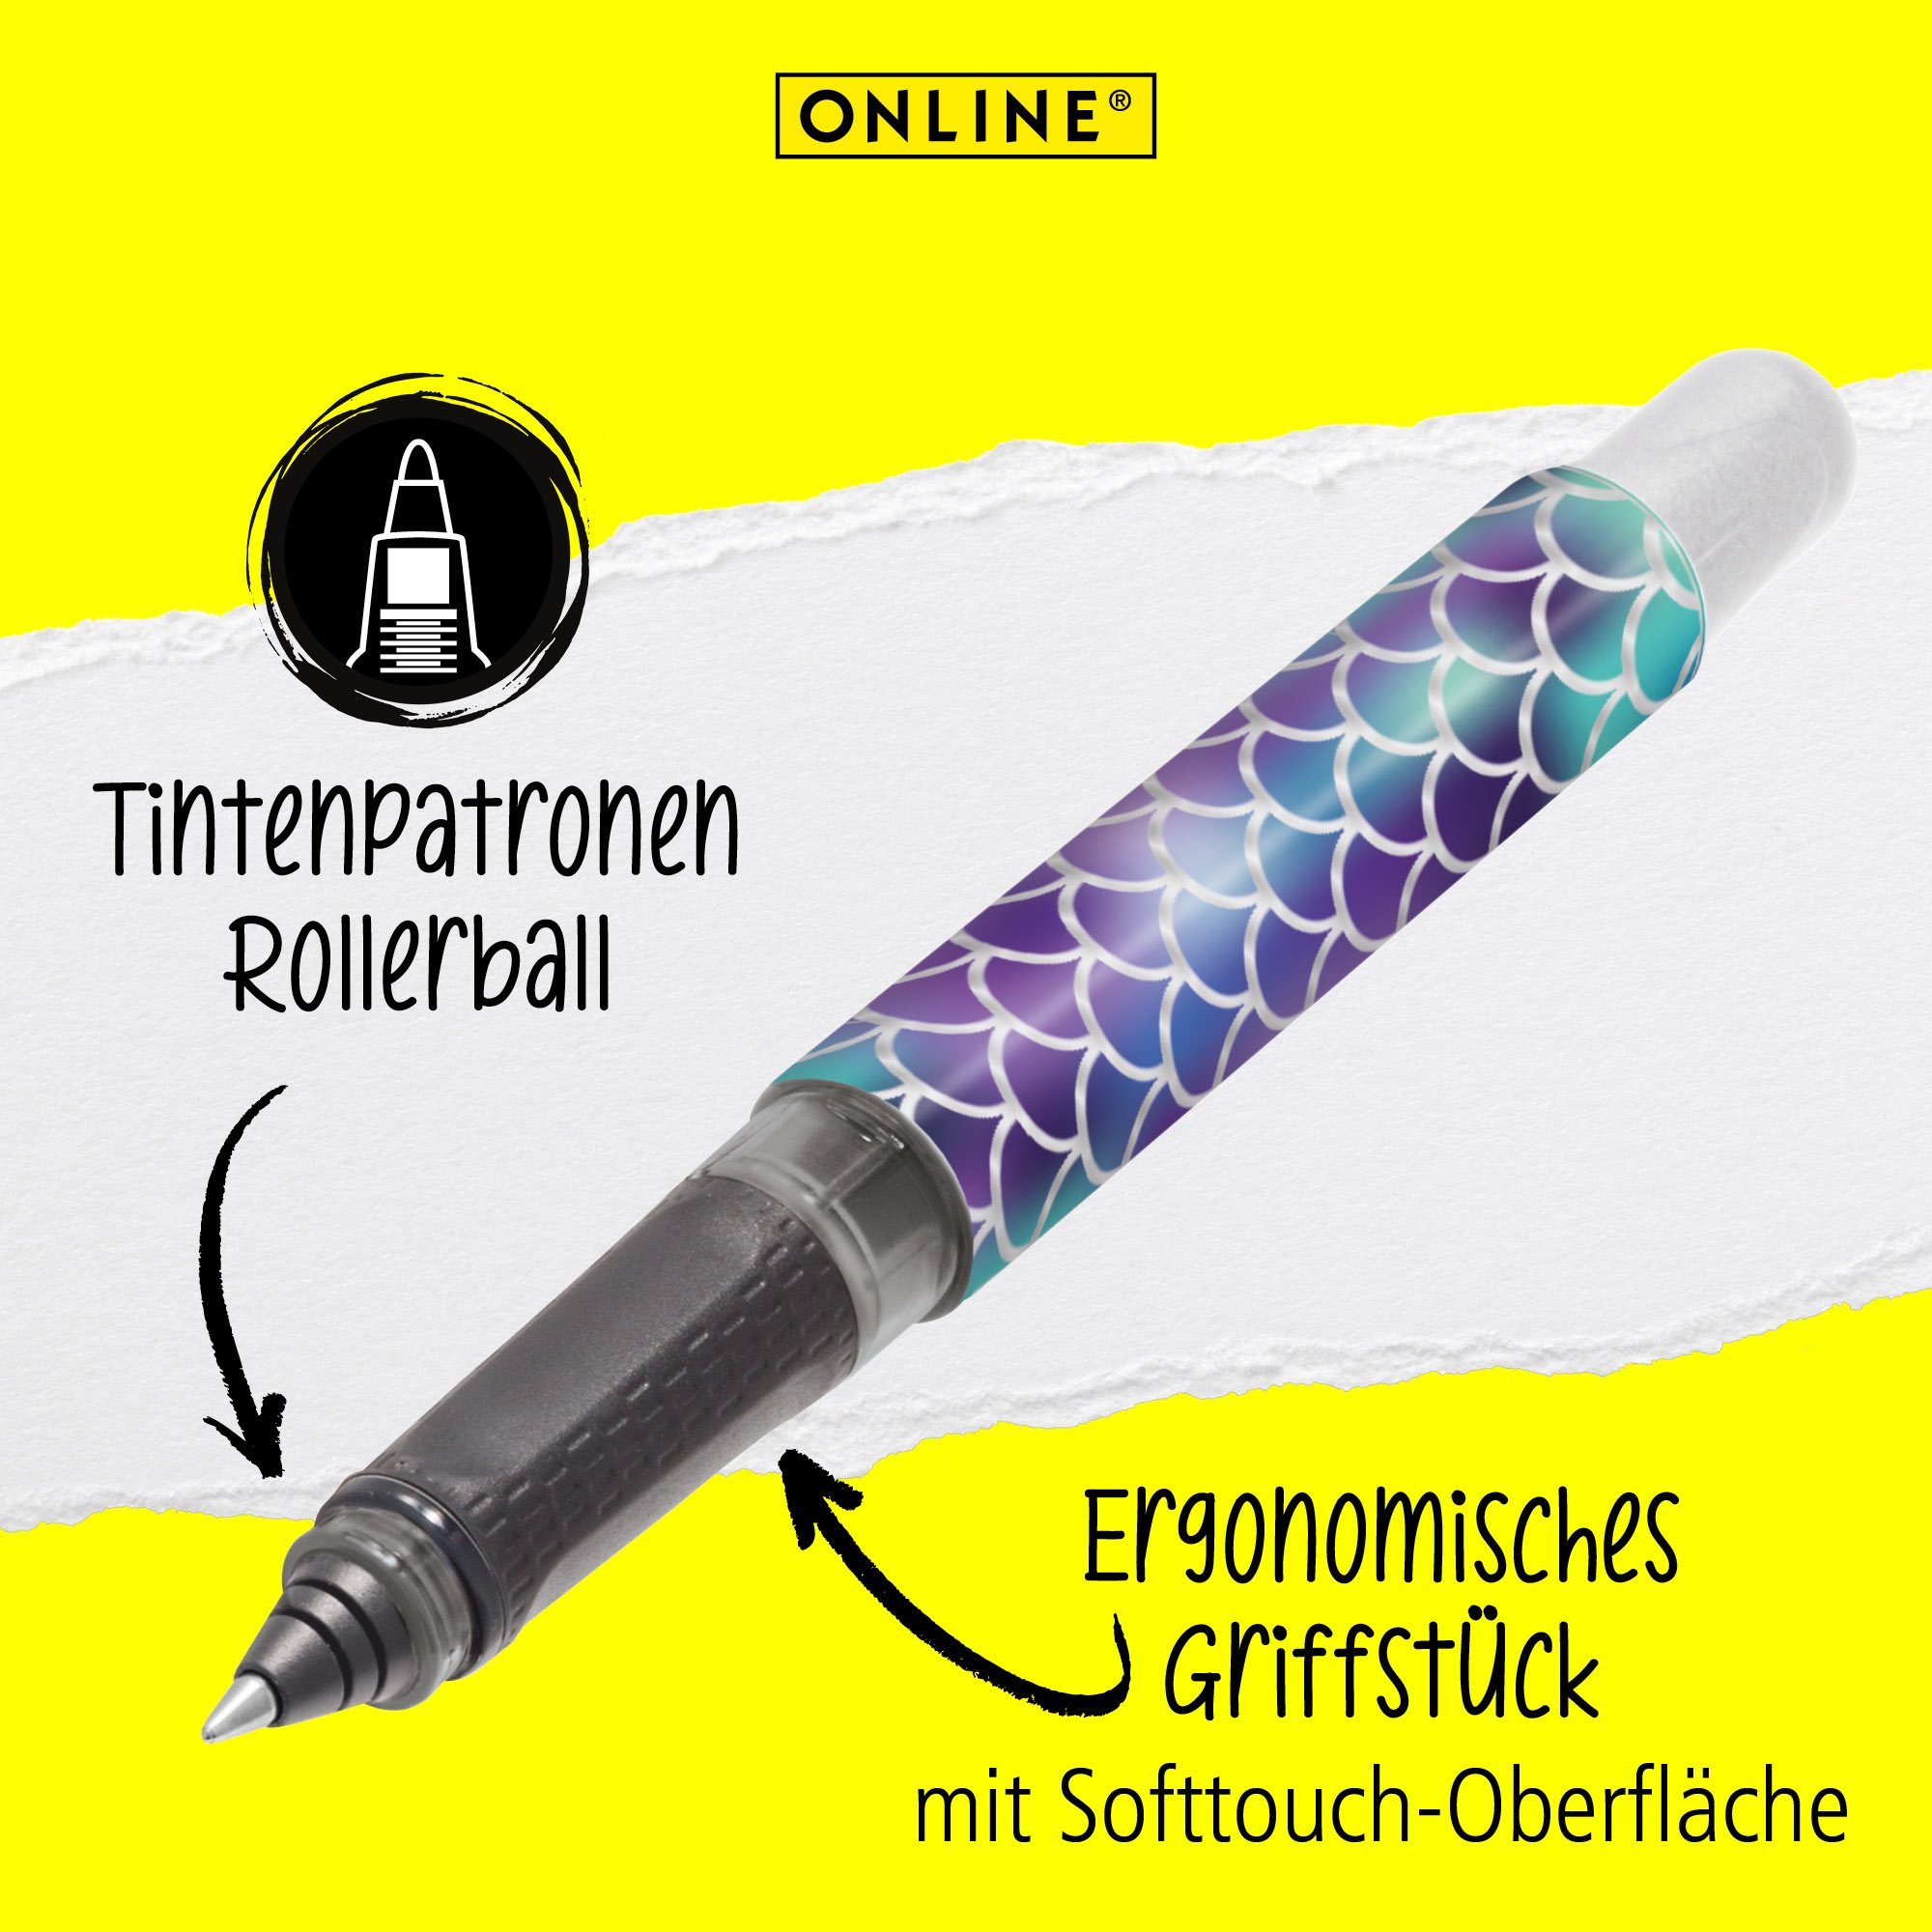 Pen Online ideal ergonomisch, hergestellt College für Deutschland Tintenpatronen-Rollerball, die in Dreams Shiny Schule, Tintenroller